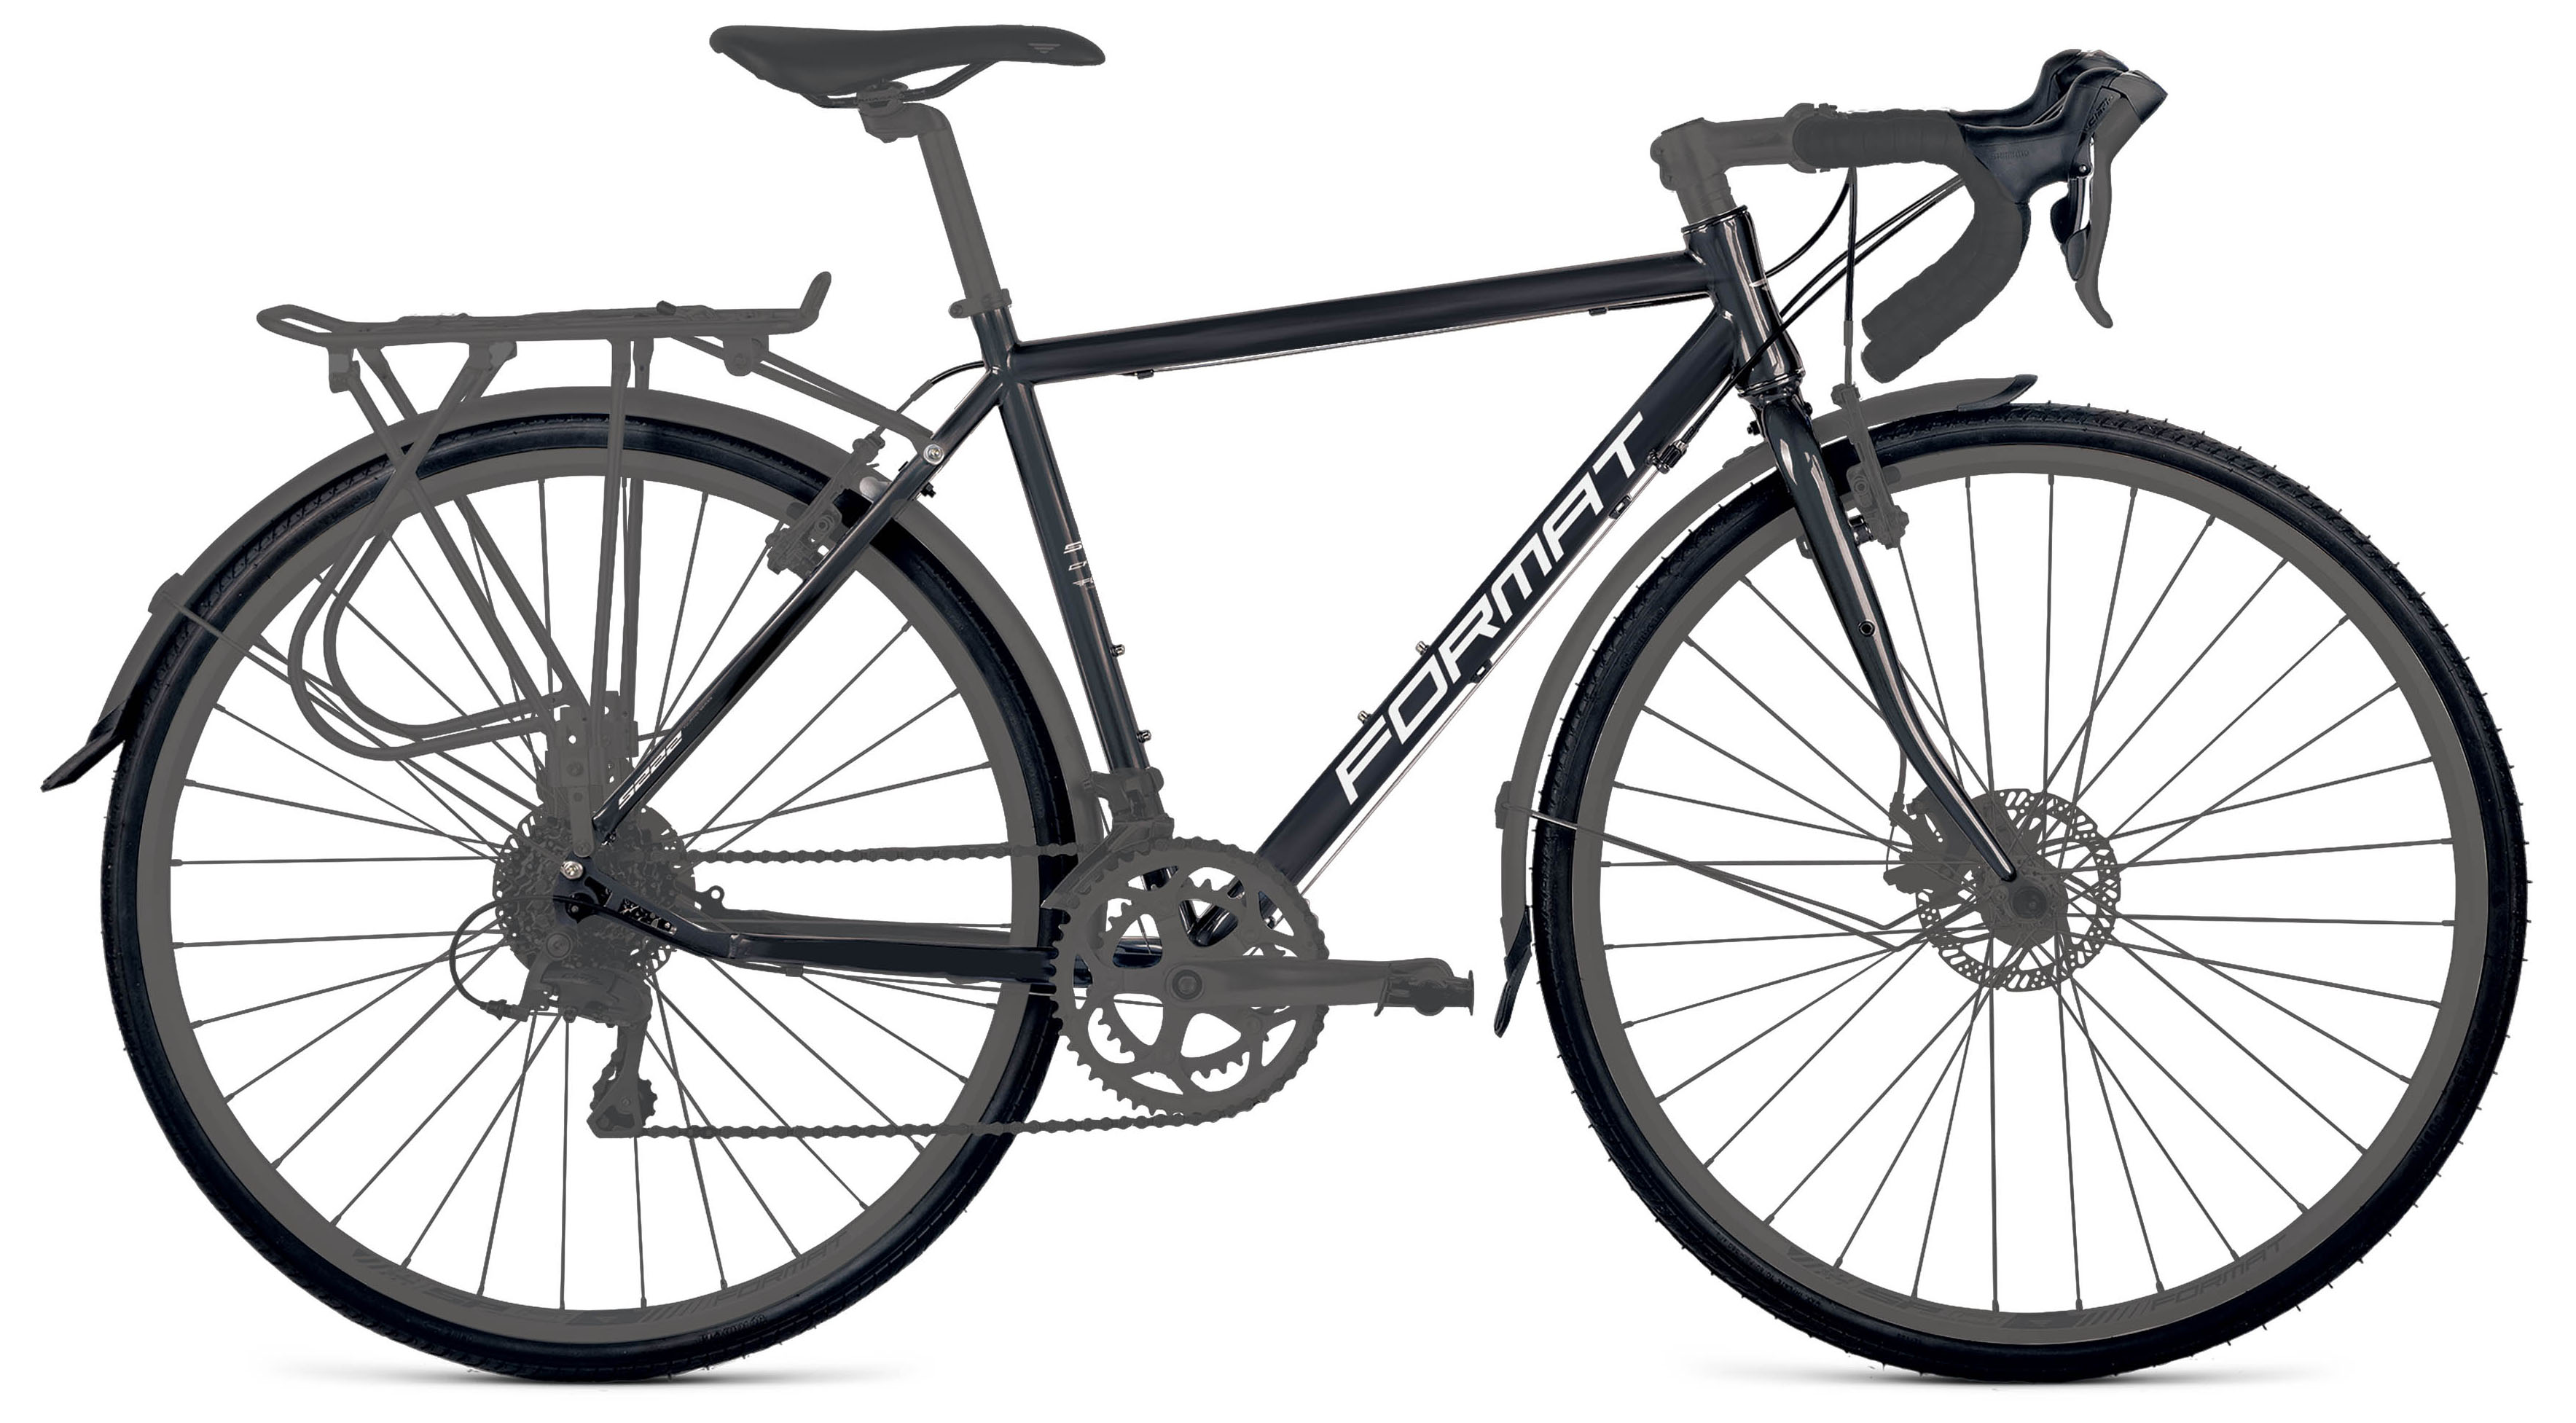  Велосипед Format 5222 2019